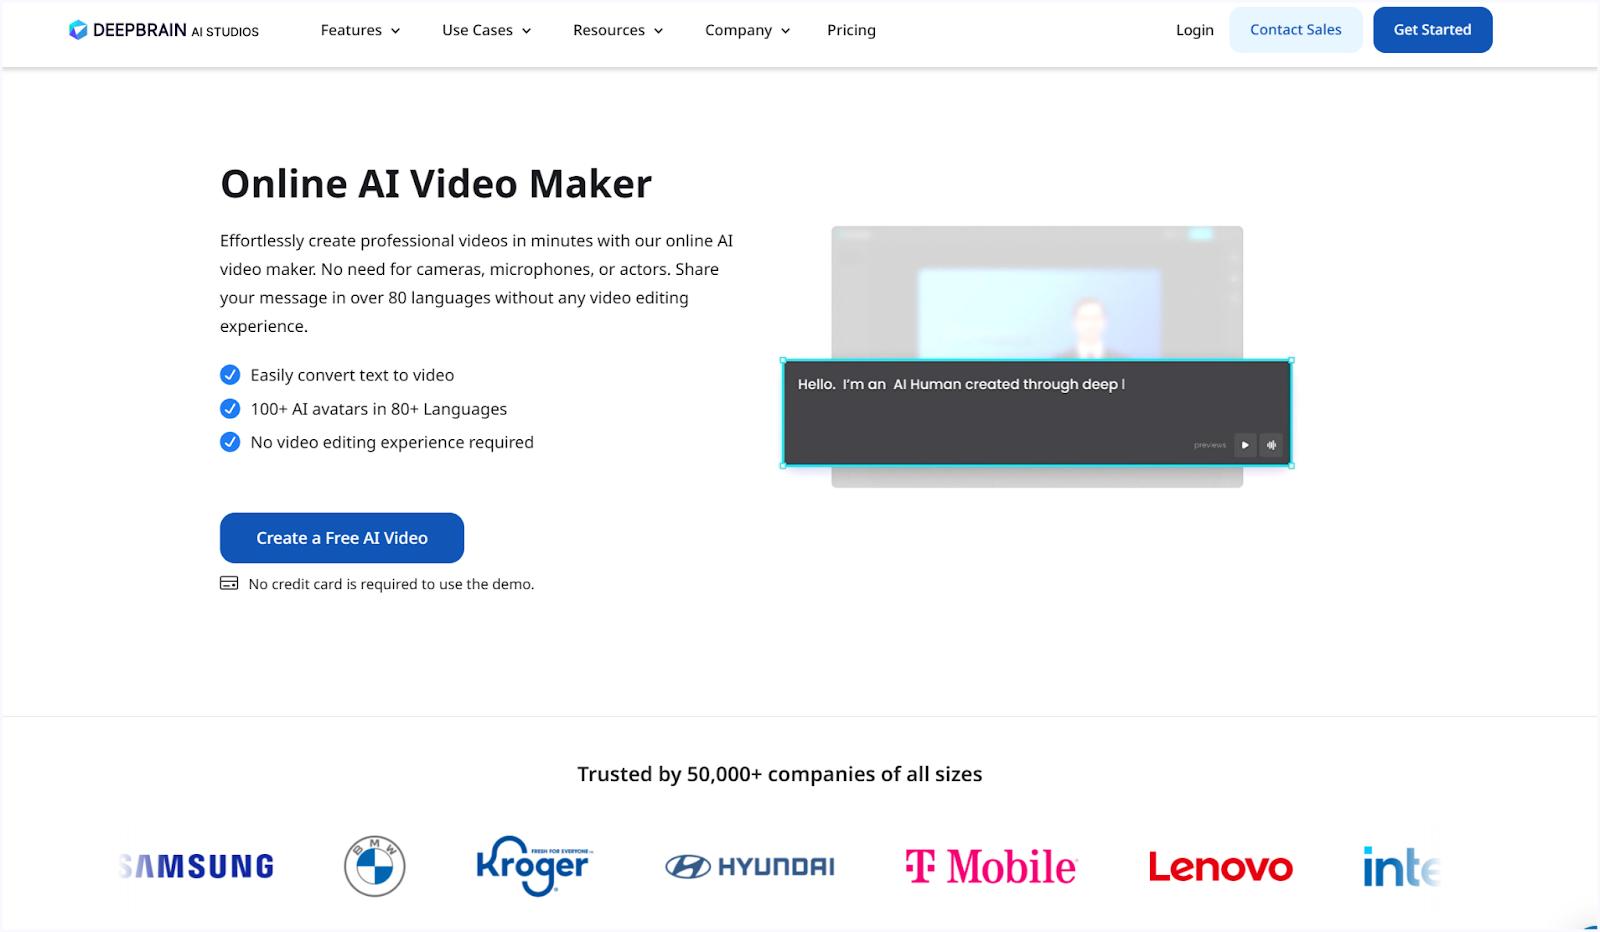 DeepBrain Online Video Maker